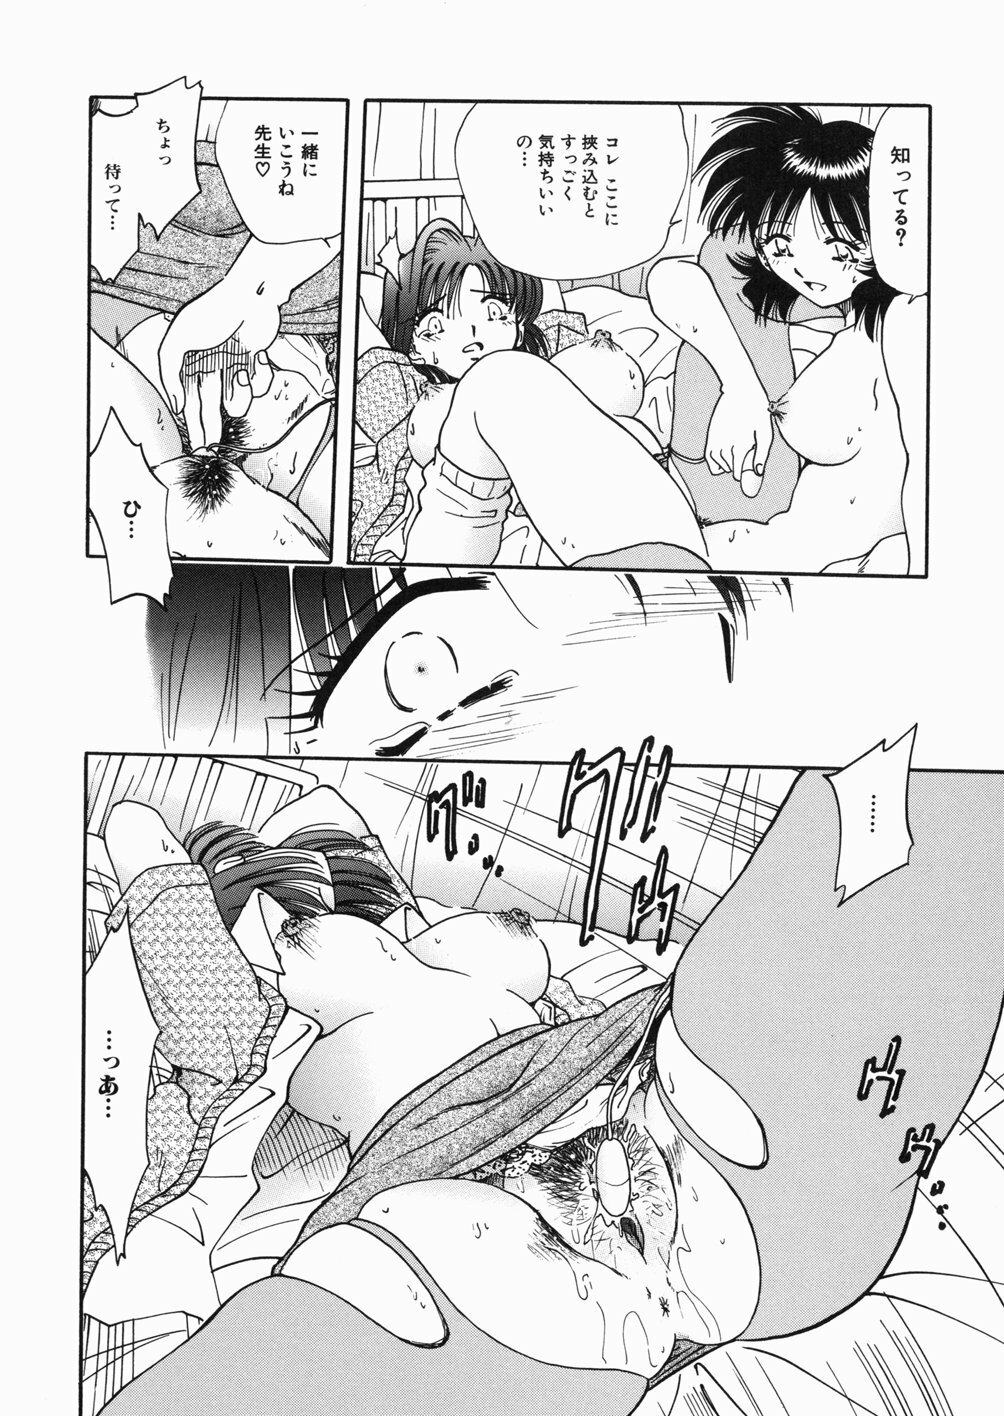 [Shizuka] Onna Kyoushi M - The Woman Teacher M page 18 full